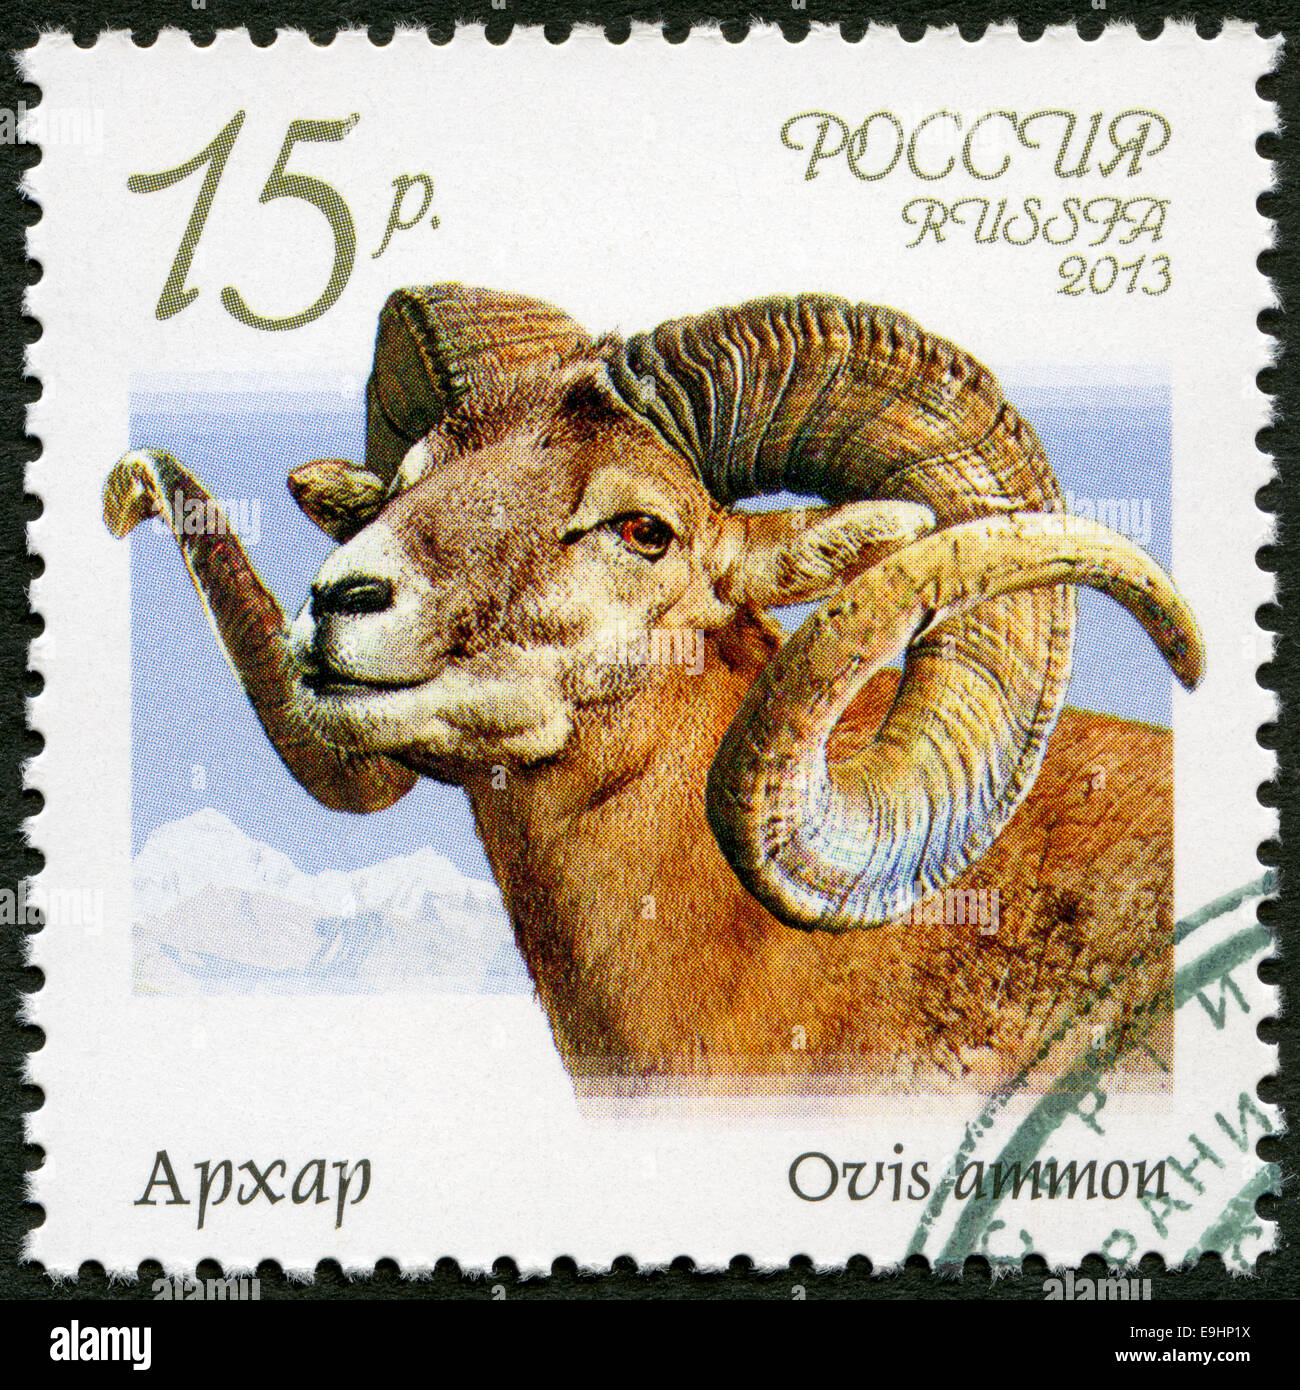 Russie - 2013 : argali (Ovis ammon), série Faune de la Russie, des chèvres sauvages et des béliers Banque D'Images